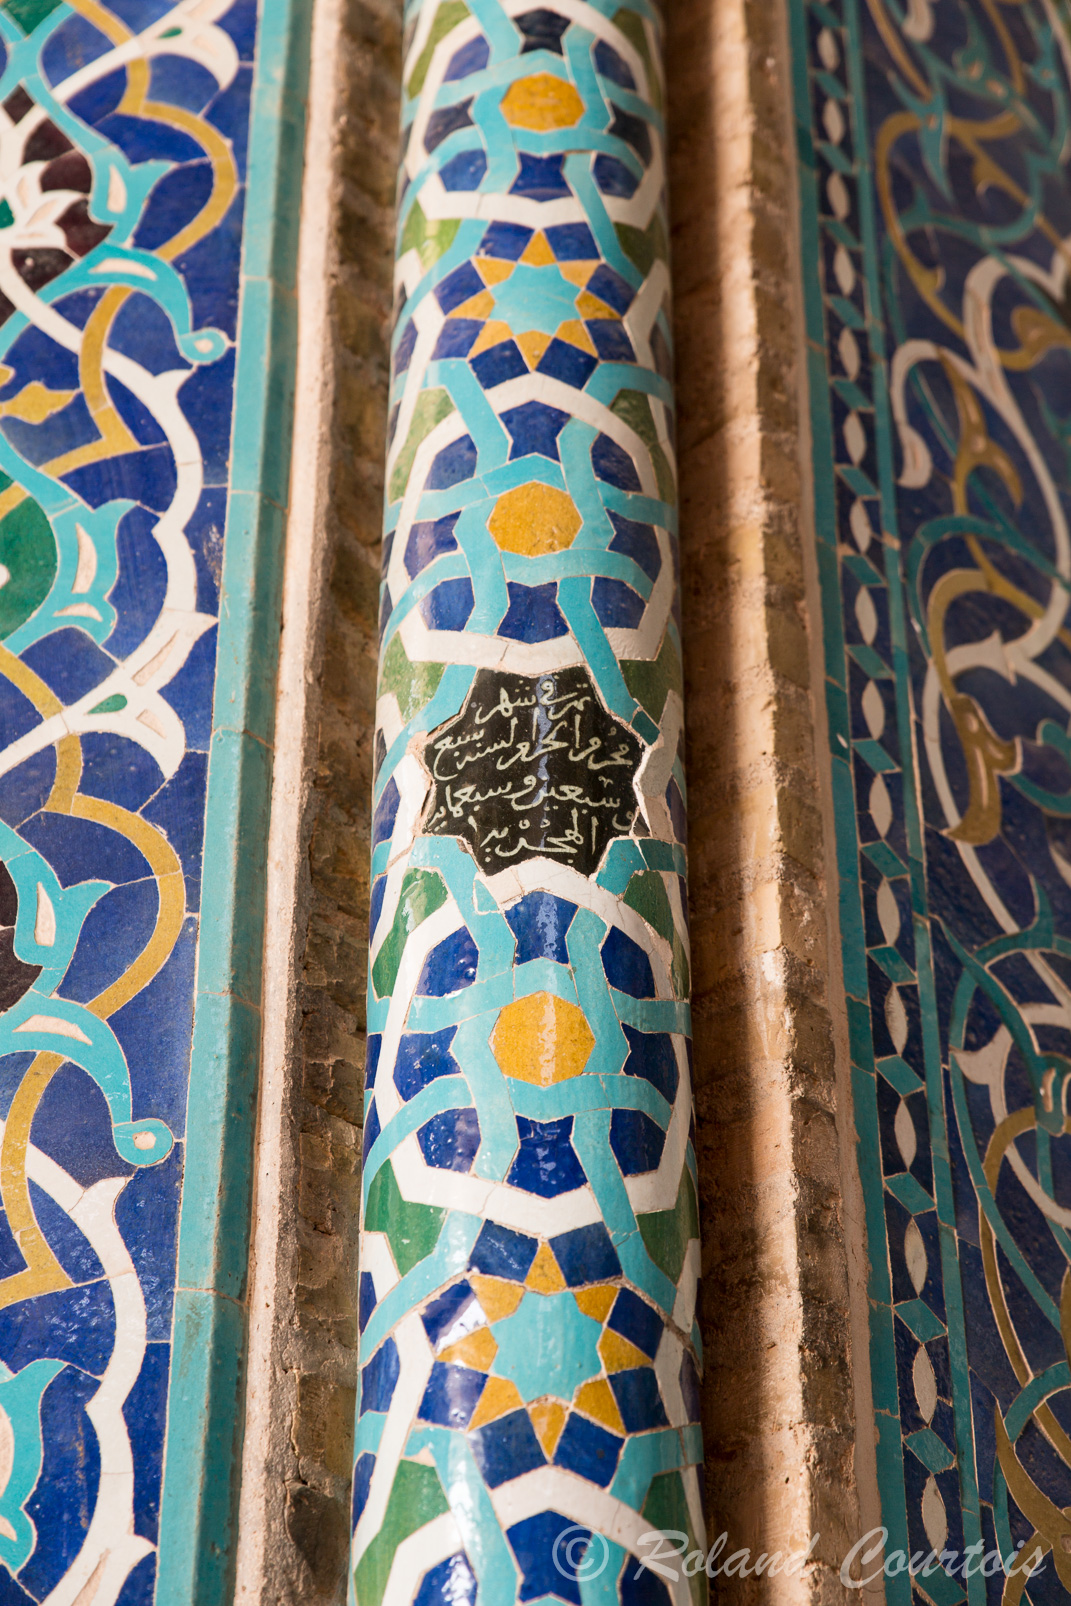 Mosquée du vendredi. Décor raffiné de mosaïques et céramiques.